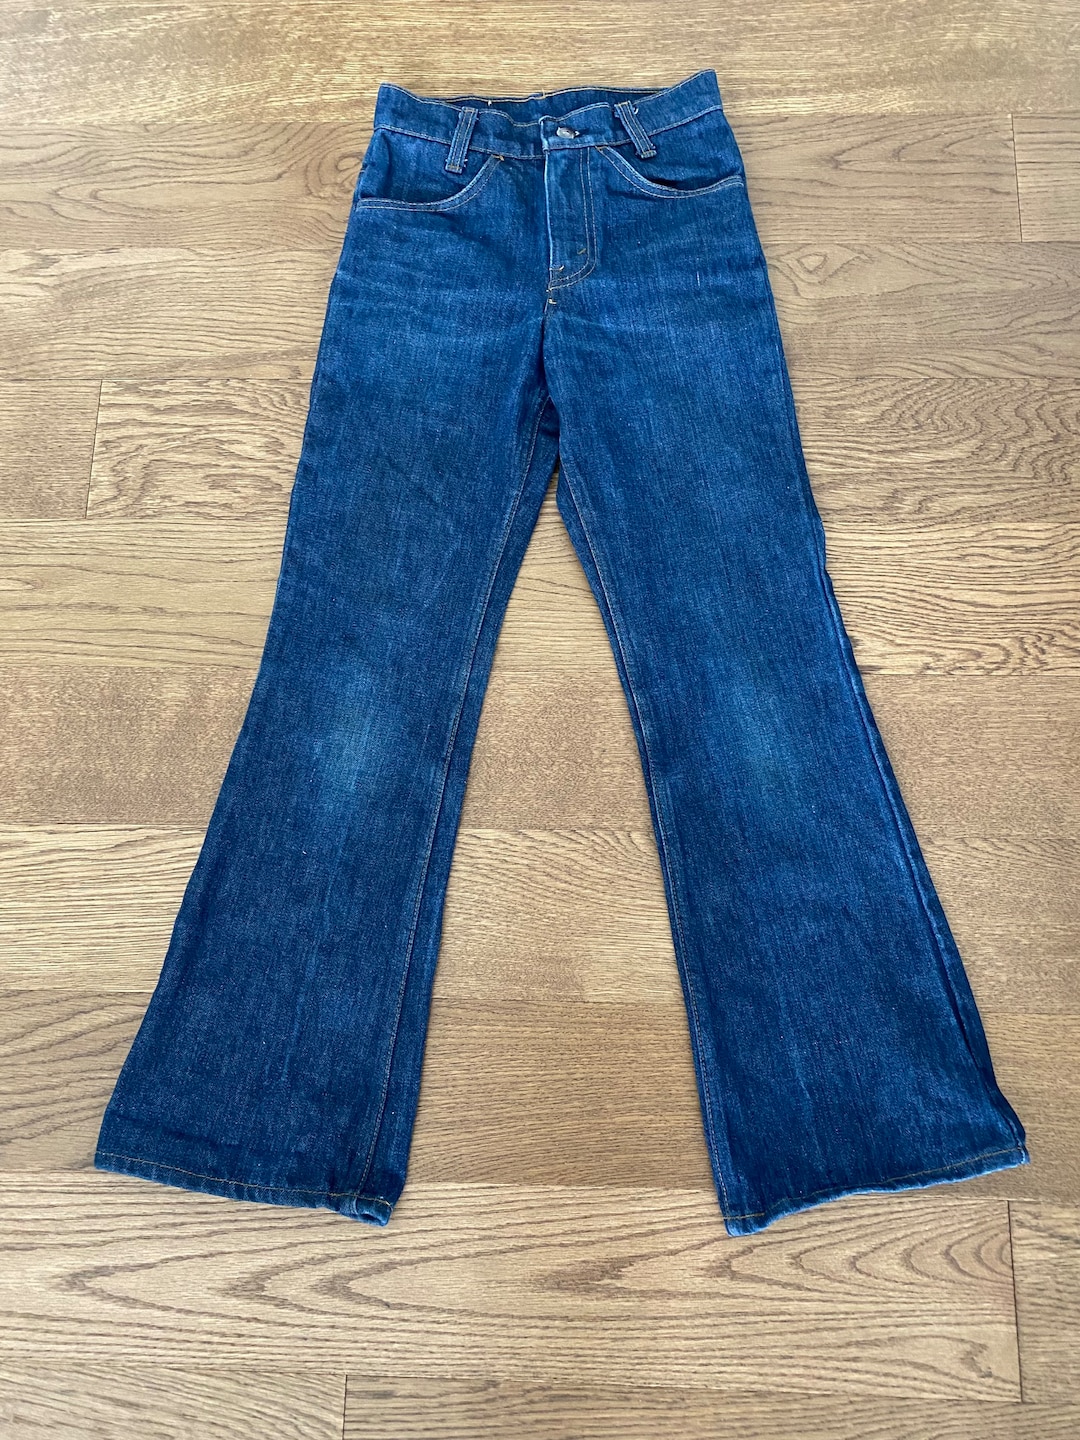 70s Levis Bell Bottoms Jeans Flares Dark Wash 746 24x27 Orange Tab ...